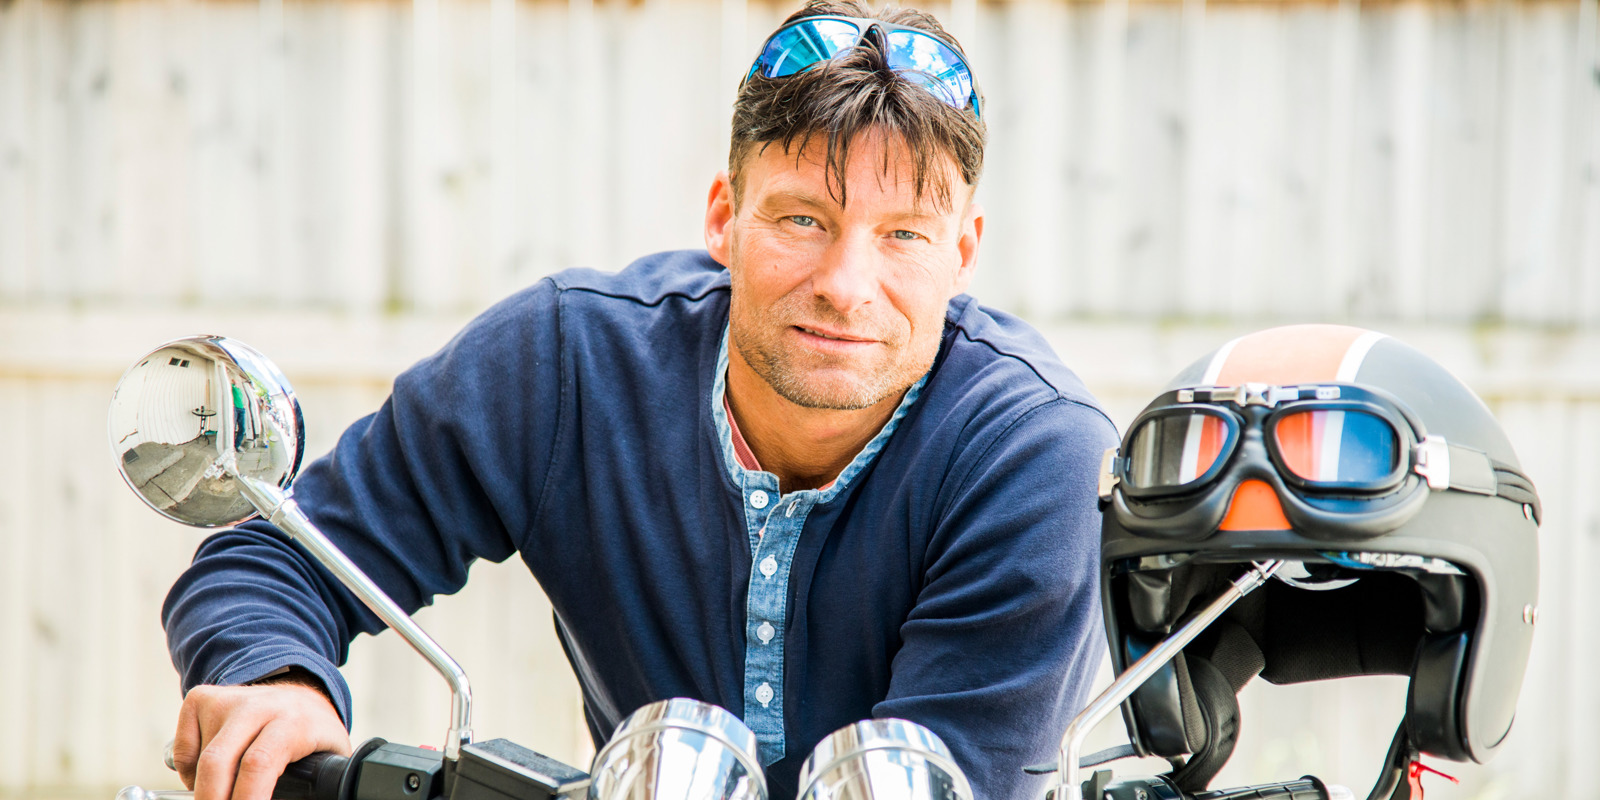 Frank kjører motorsykkel med hårerstatning fra Apollo Hårsenter